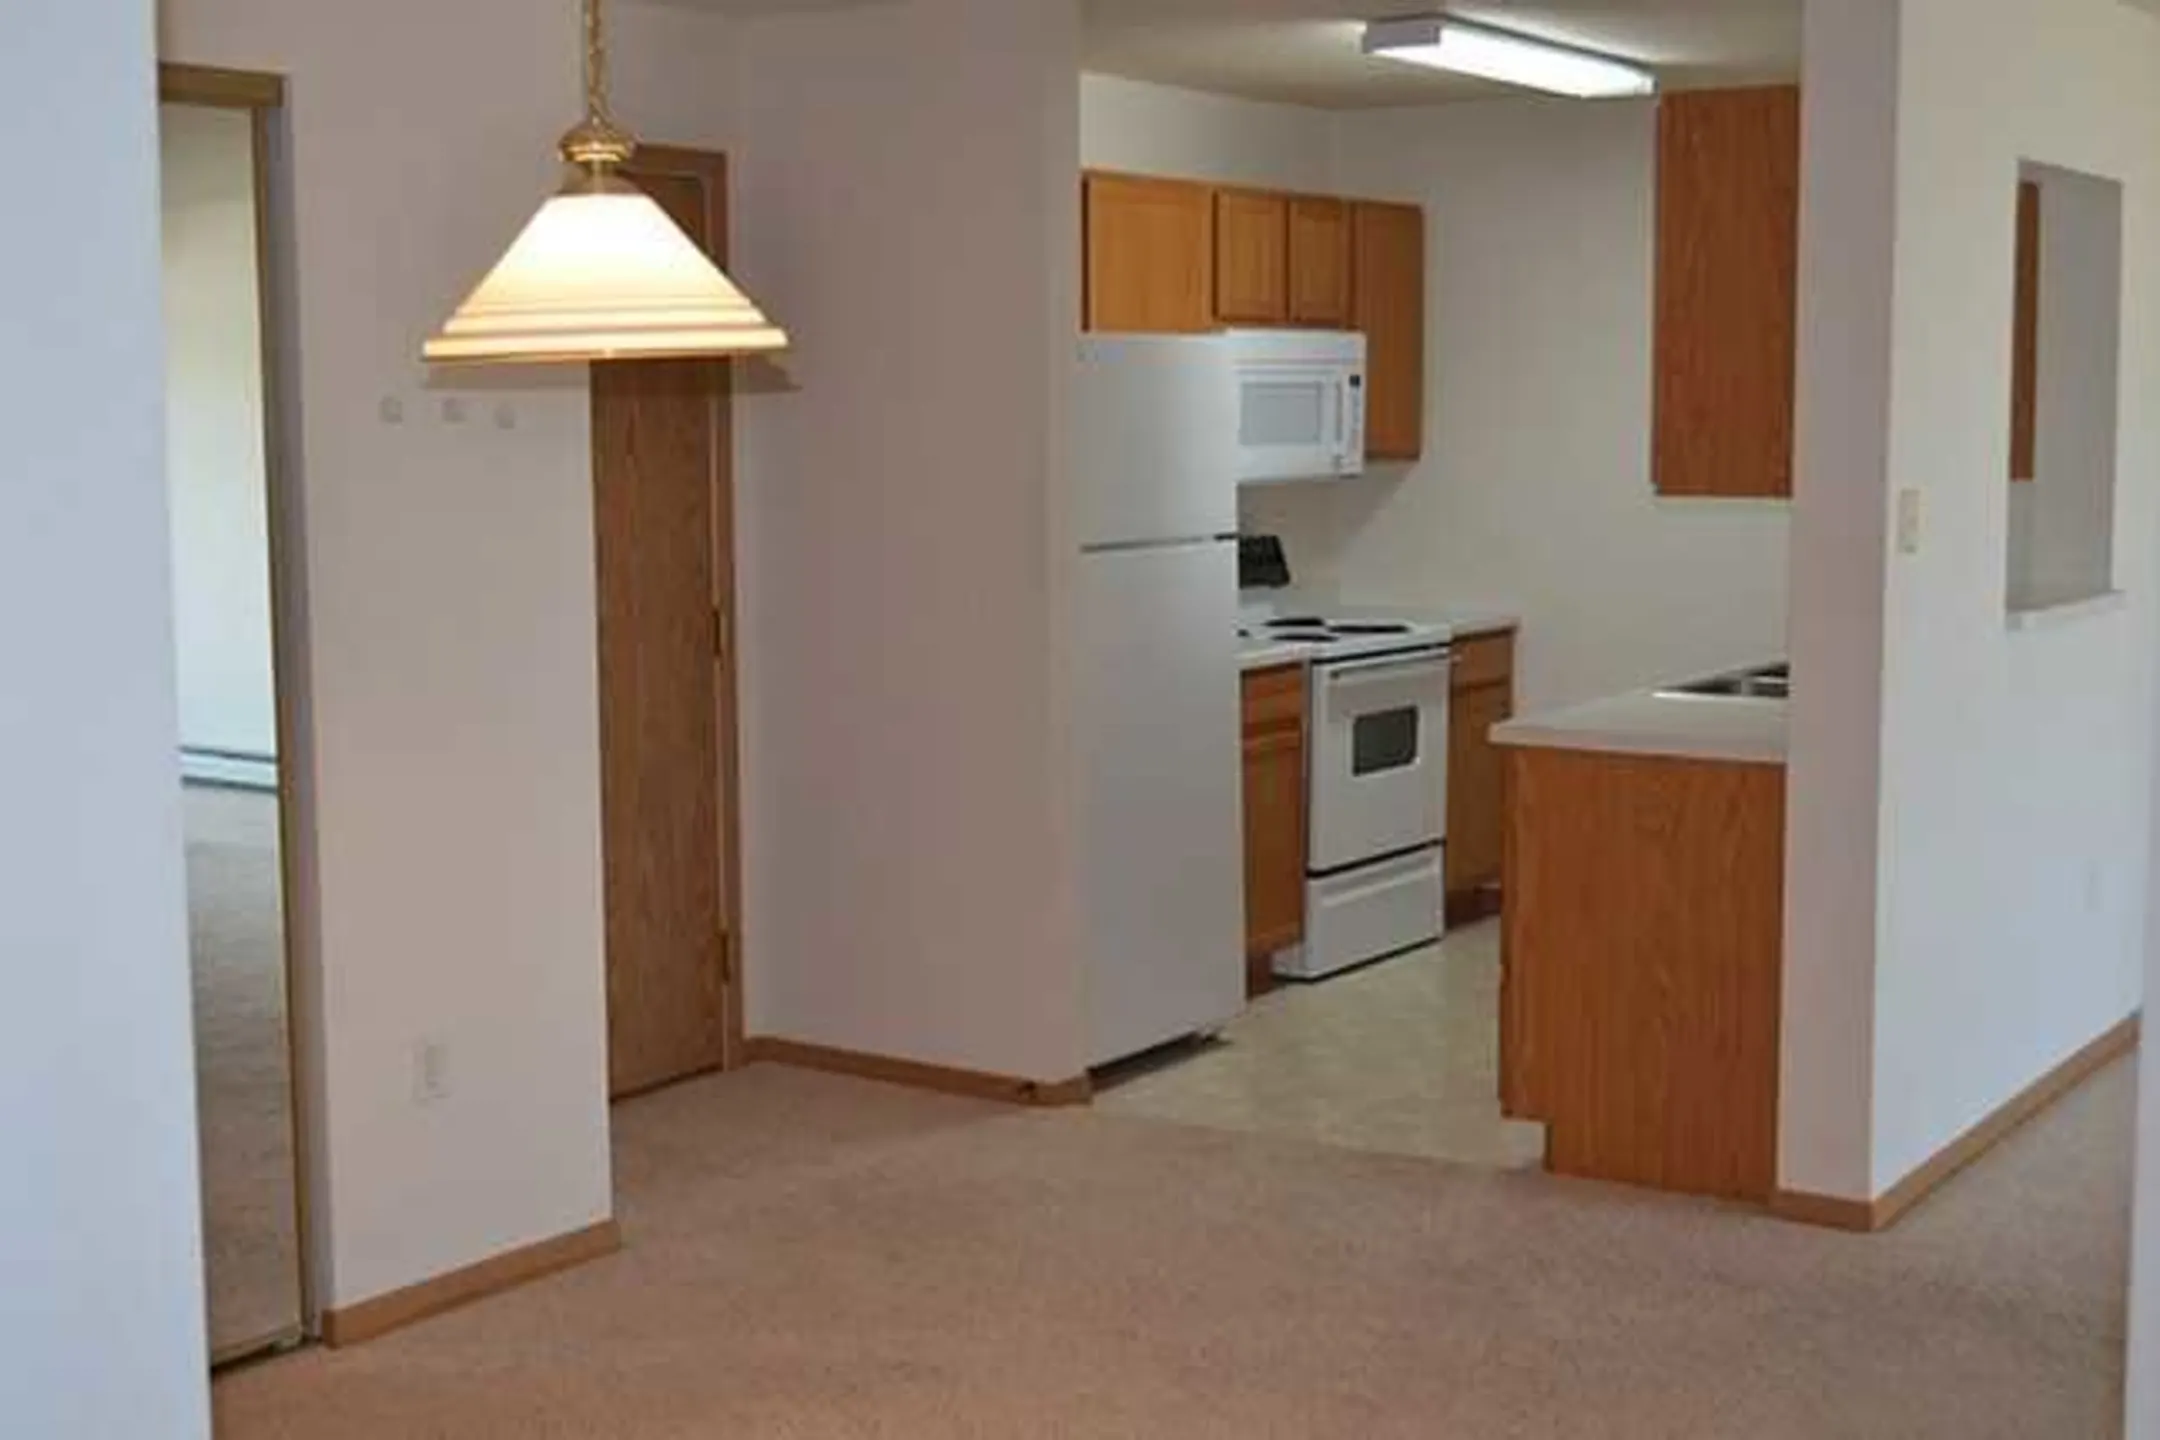 Kitchen - Greenbrier Apartments - Fargo, ND